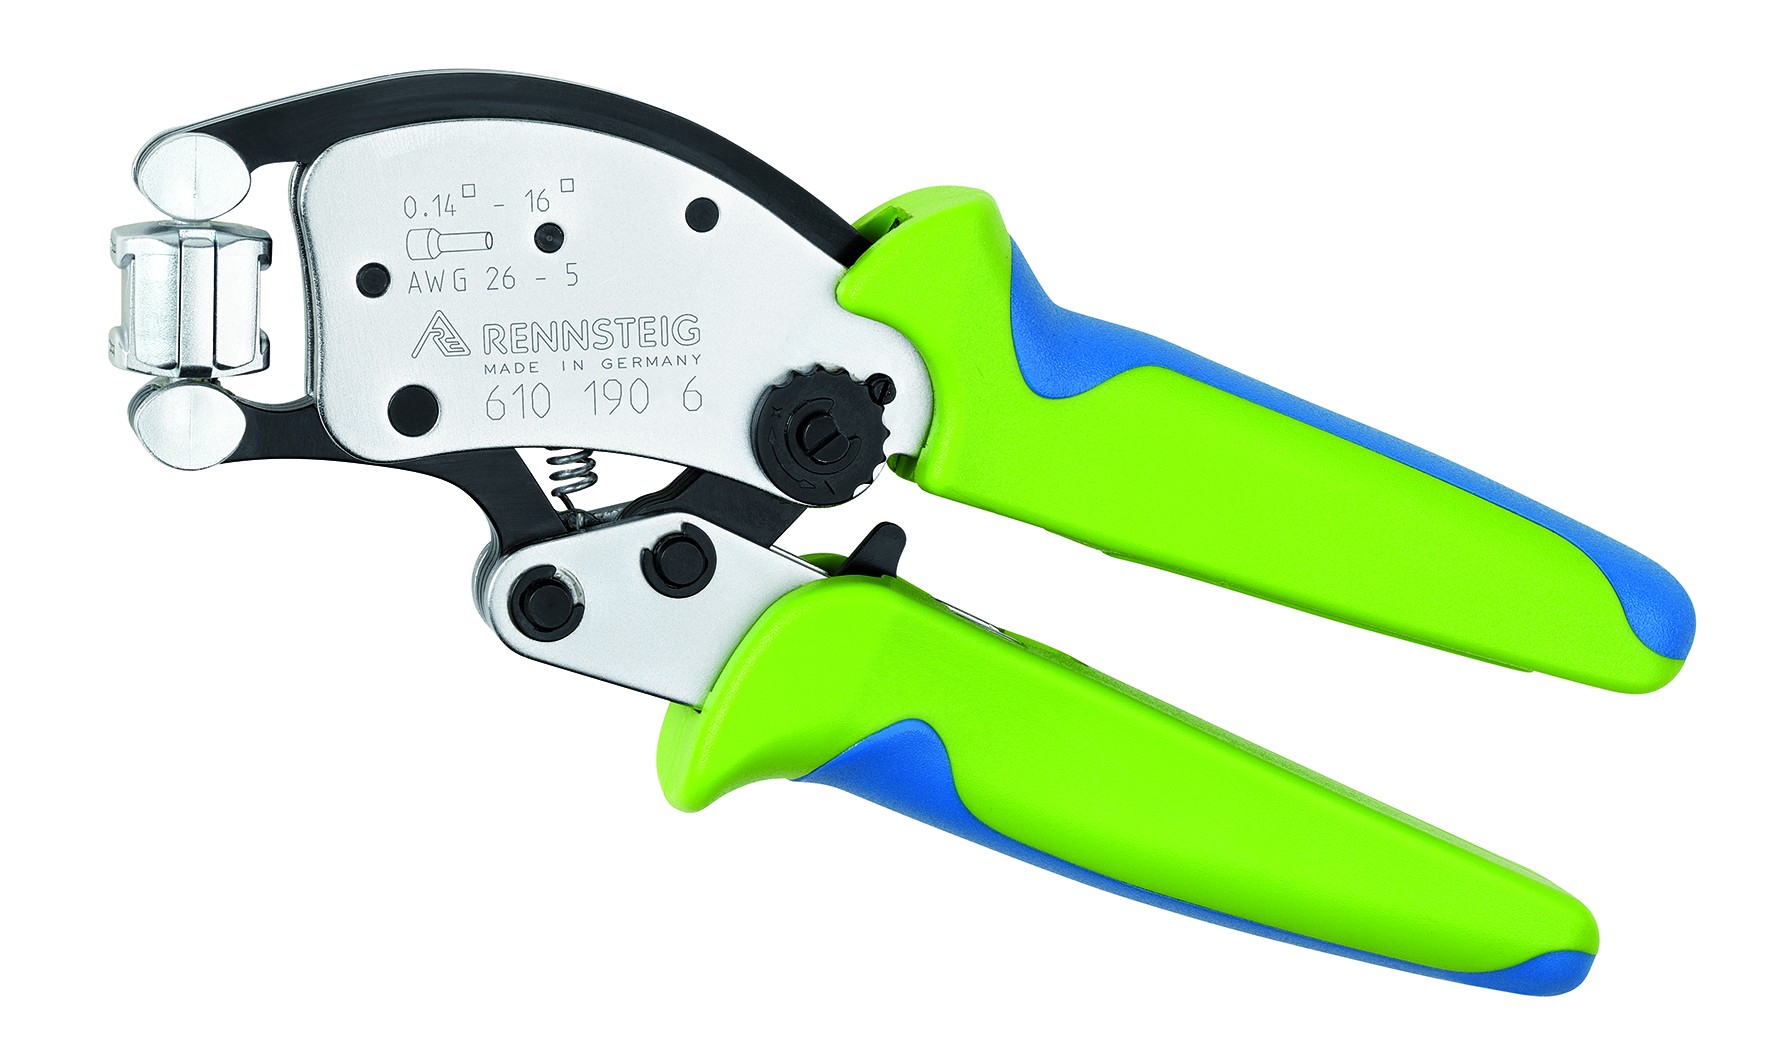 Twistor16® Alicate autoajustable para crimpar punteras huecas con cabezal  giratorio para crimpar con fundas multicomponentes